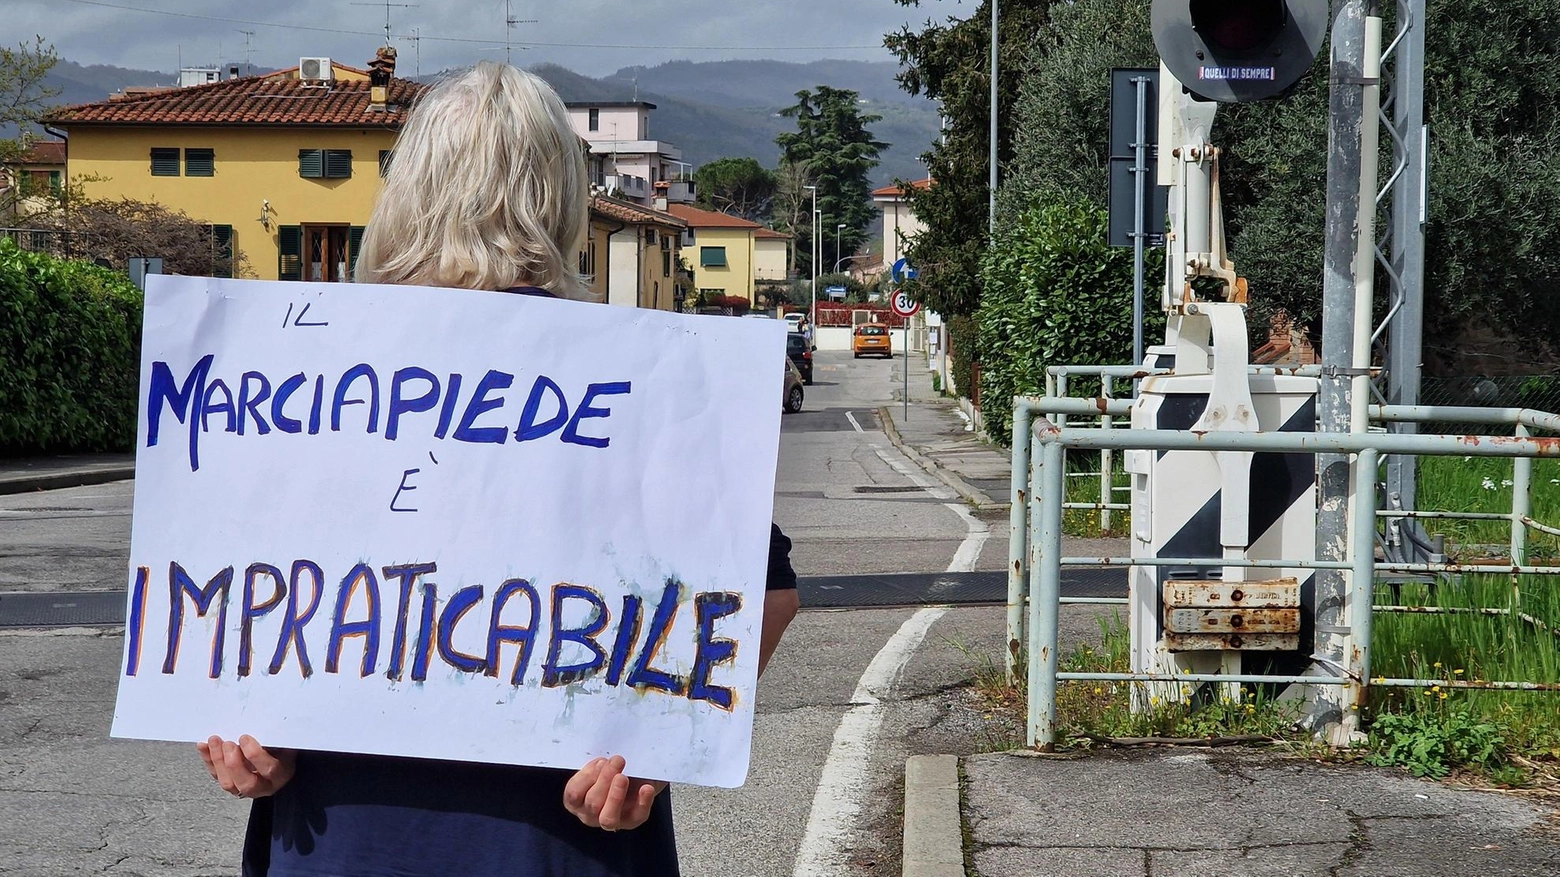 La denuncia silenziosa. Rosalba e il suo cartello: "Costretti sull’asfalto. Serve più sensibilità"